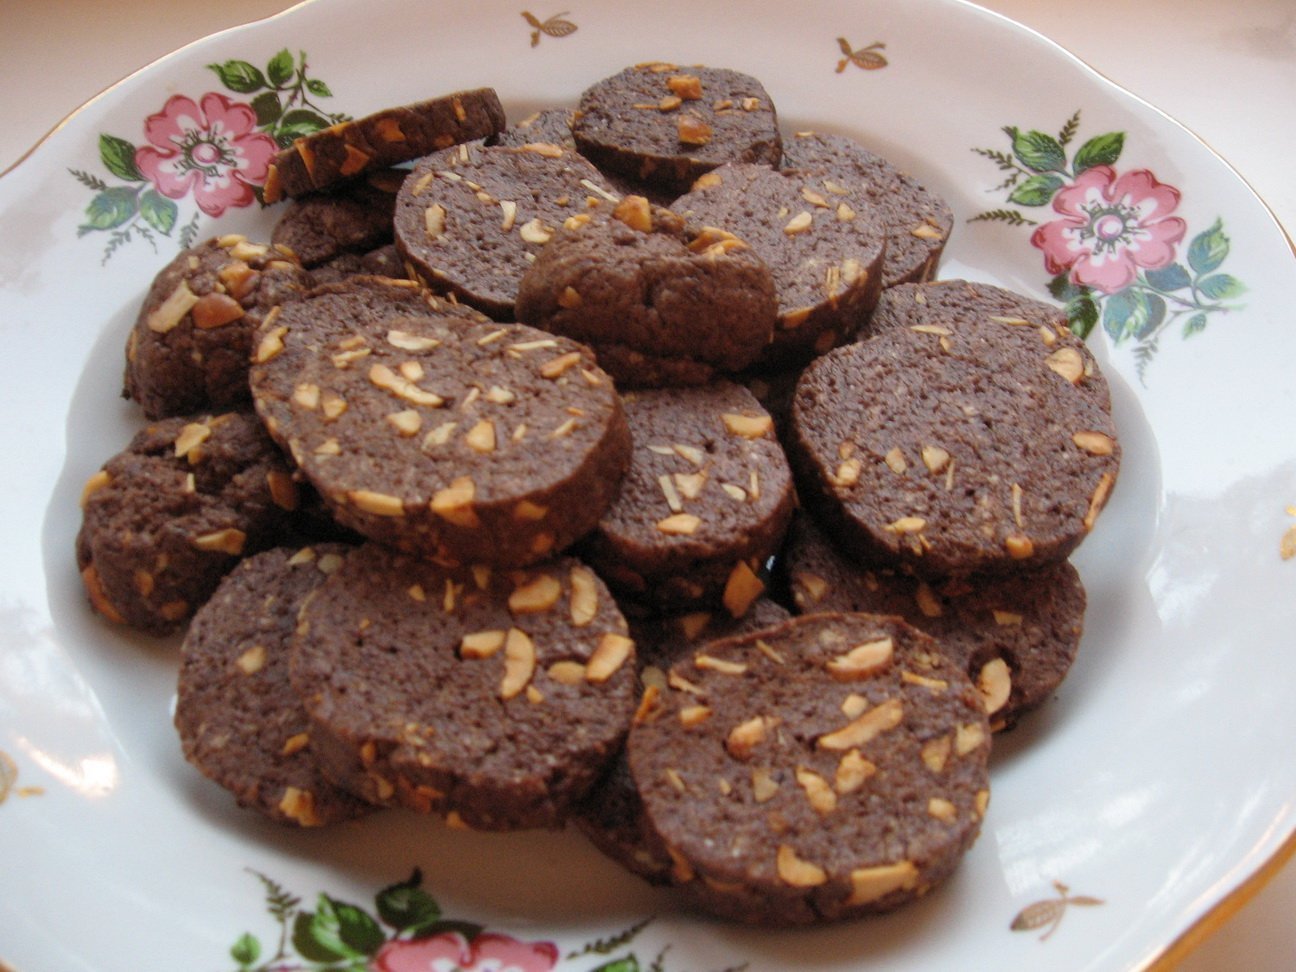 Рецепт шоколадной колбасы из печенья и какао